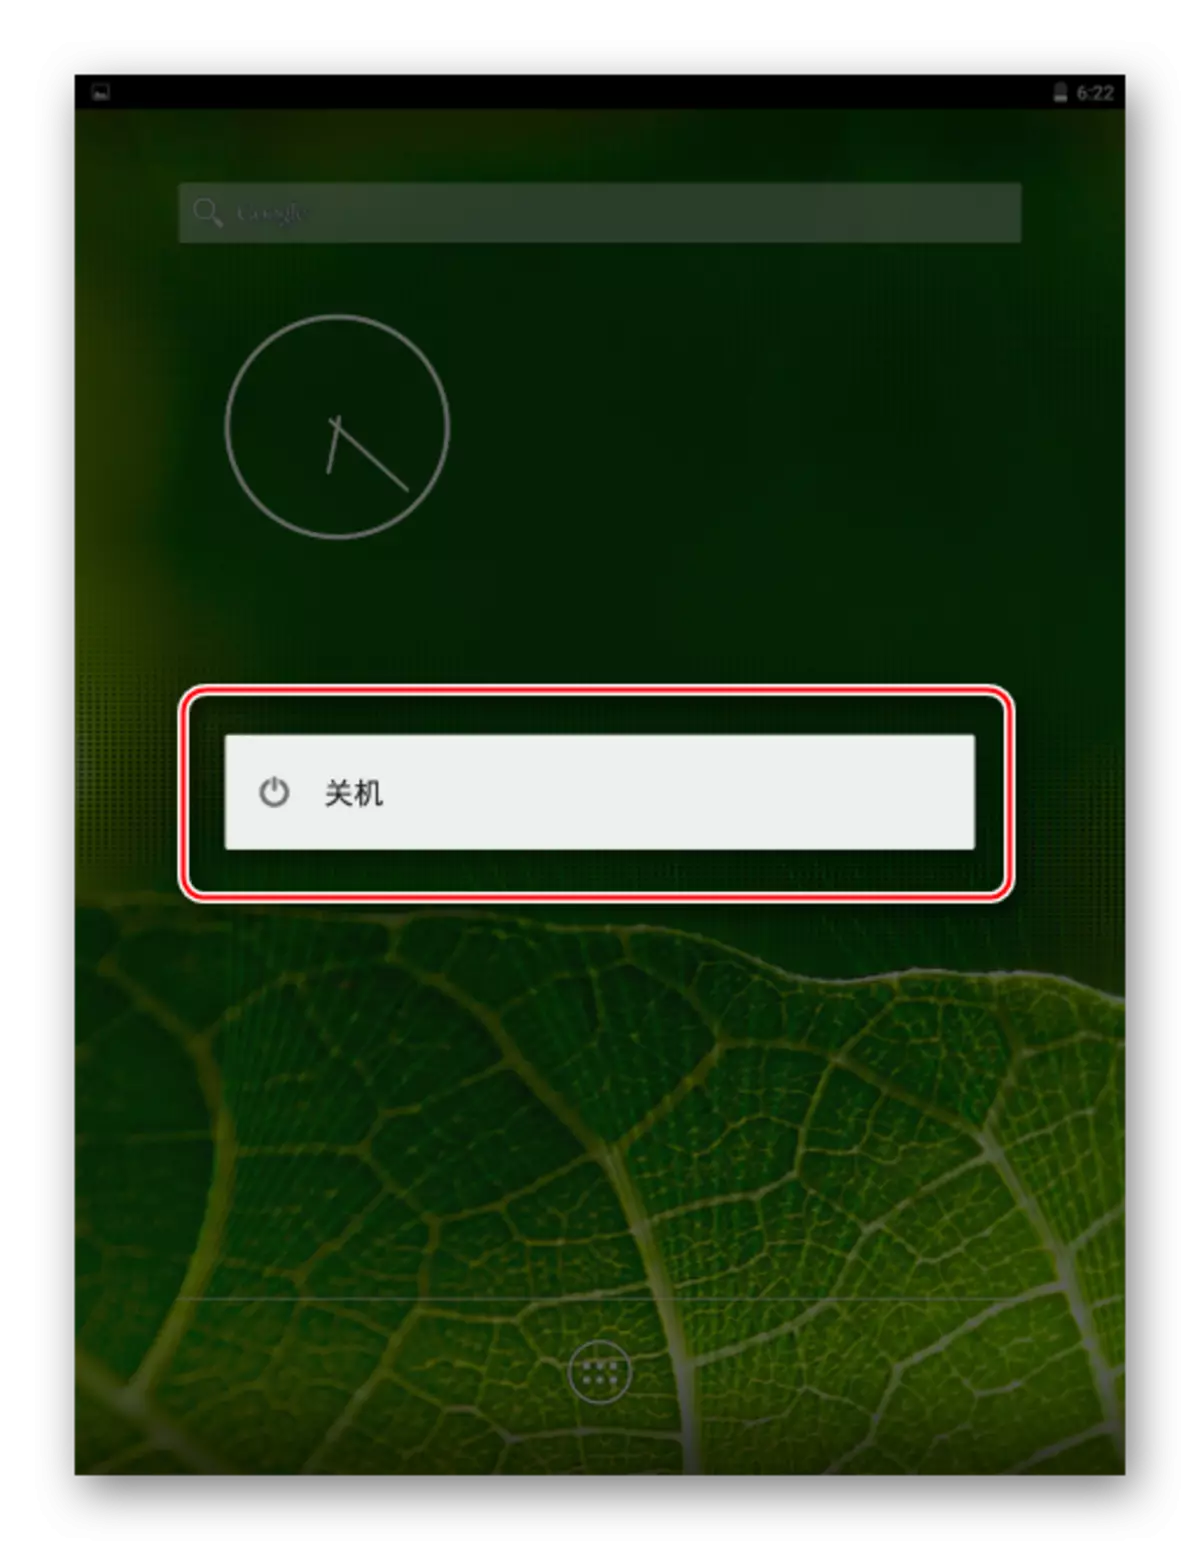 Xiaomi Mipad 2 éteignant l'appareil sous le contrôle de Pure Android